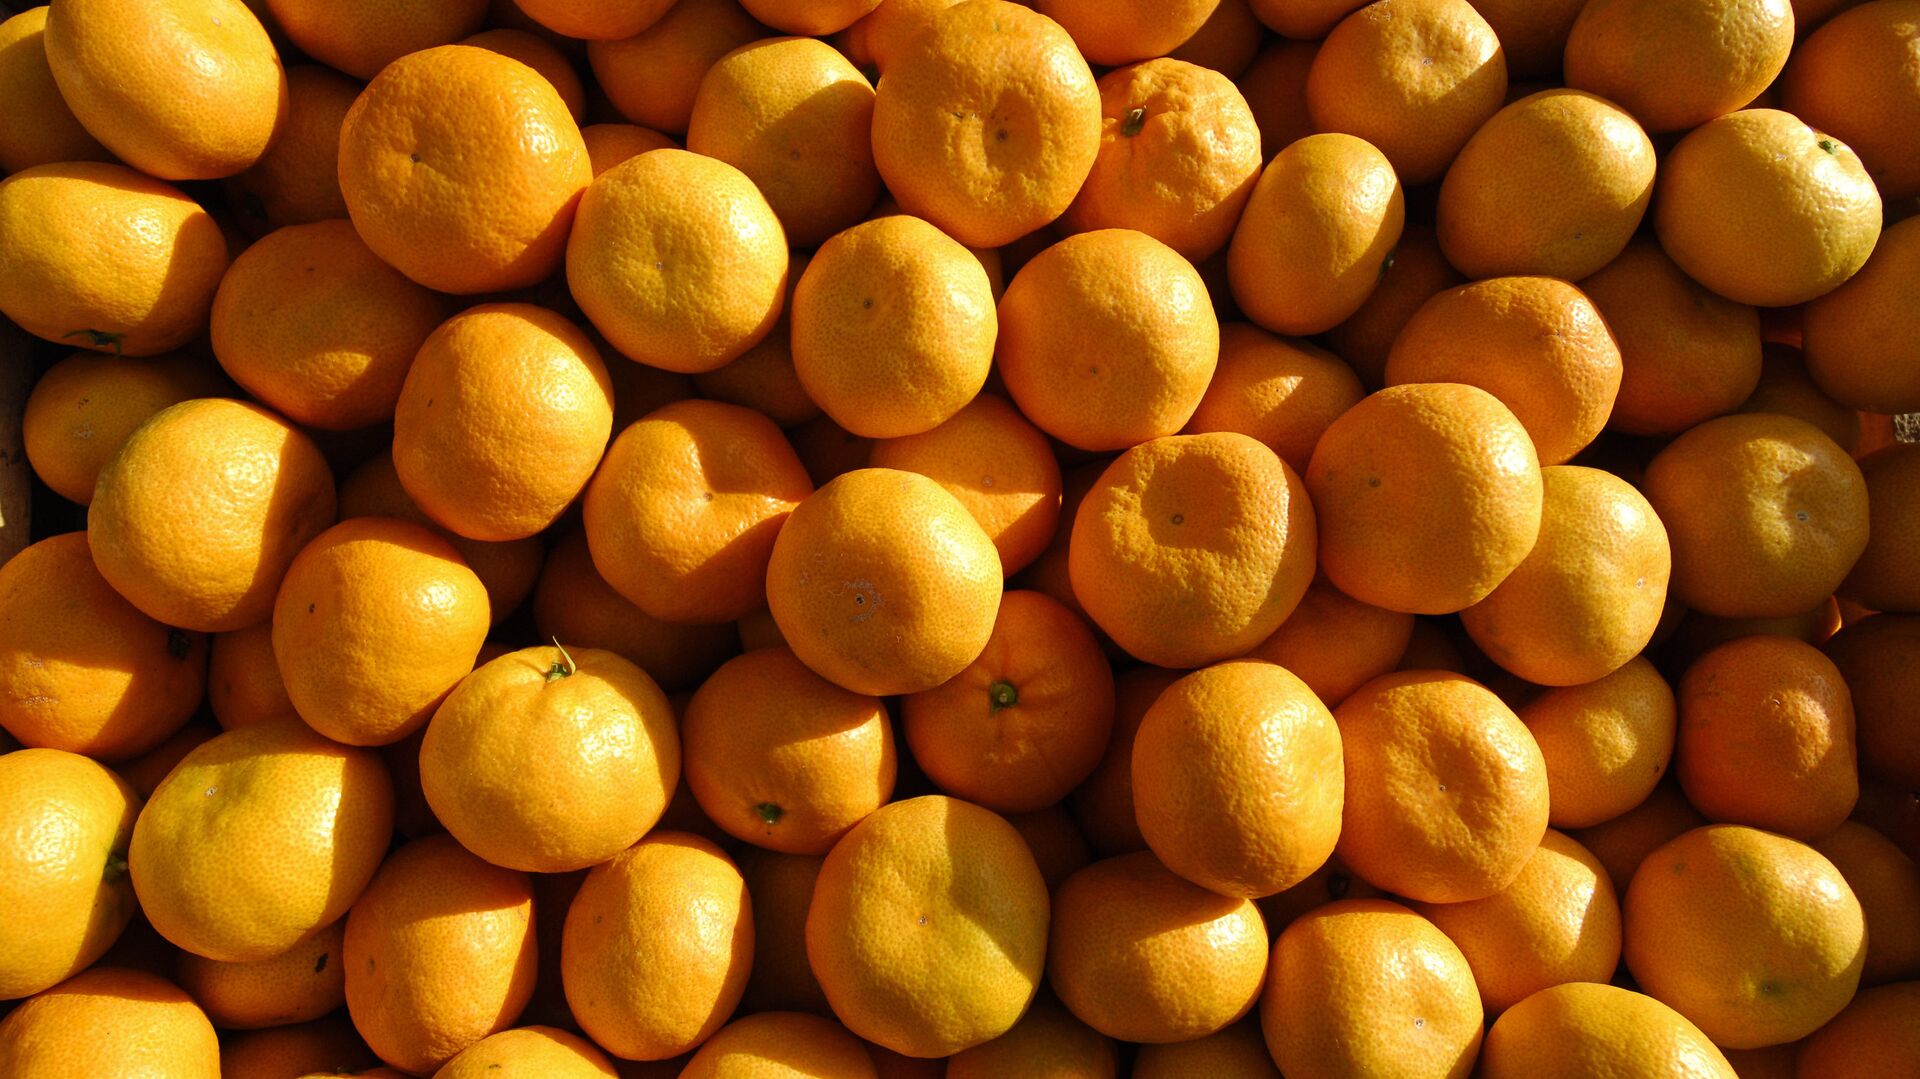 EastFruit: В Узбекистане существенно подешевели мандарины